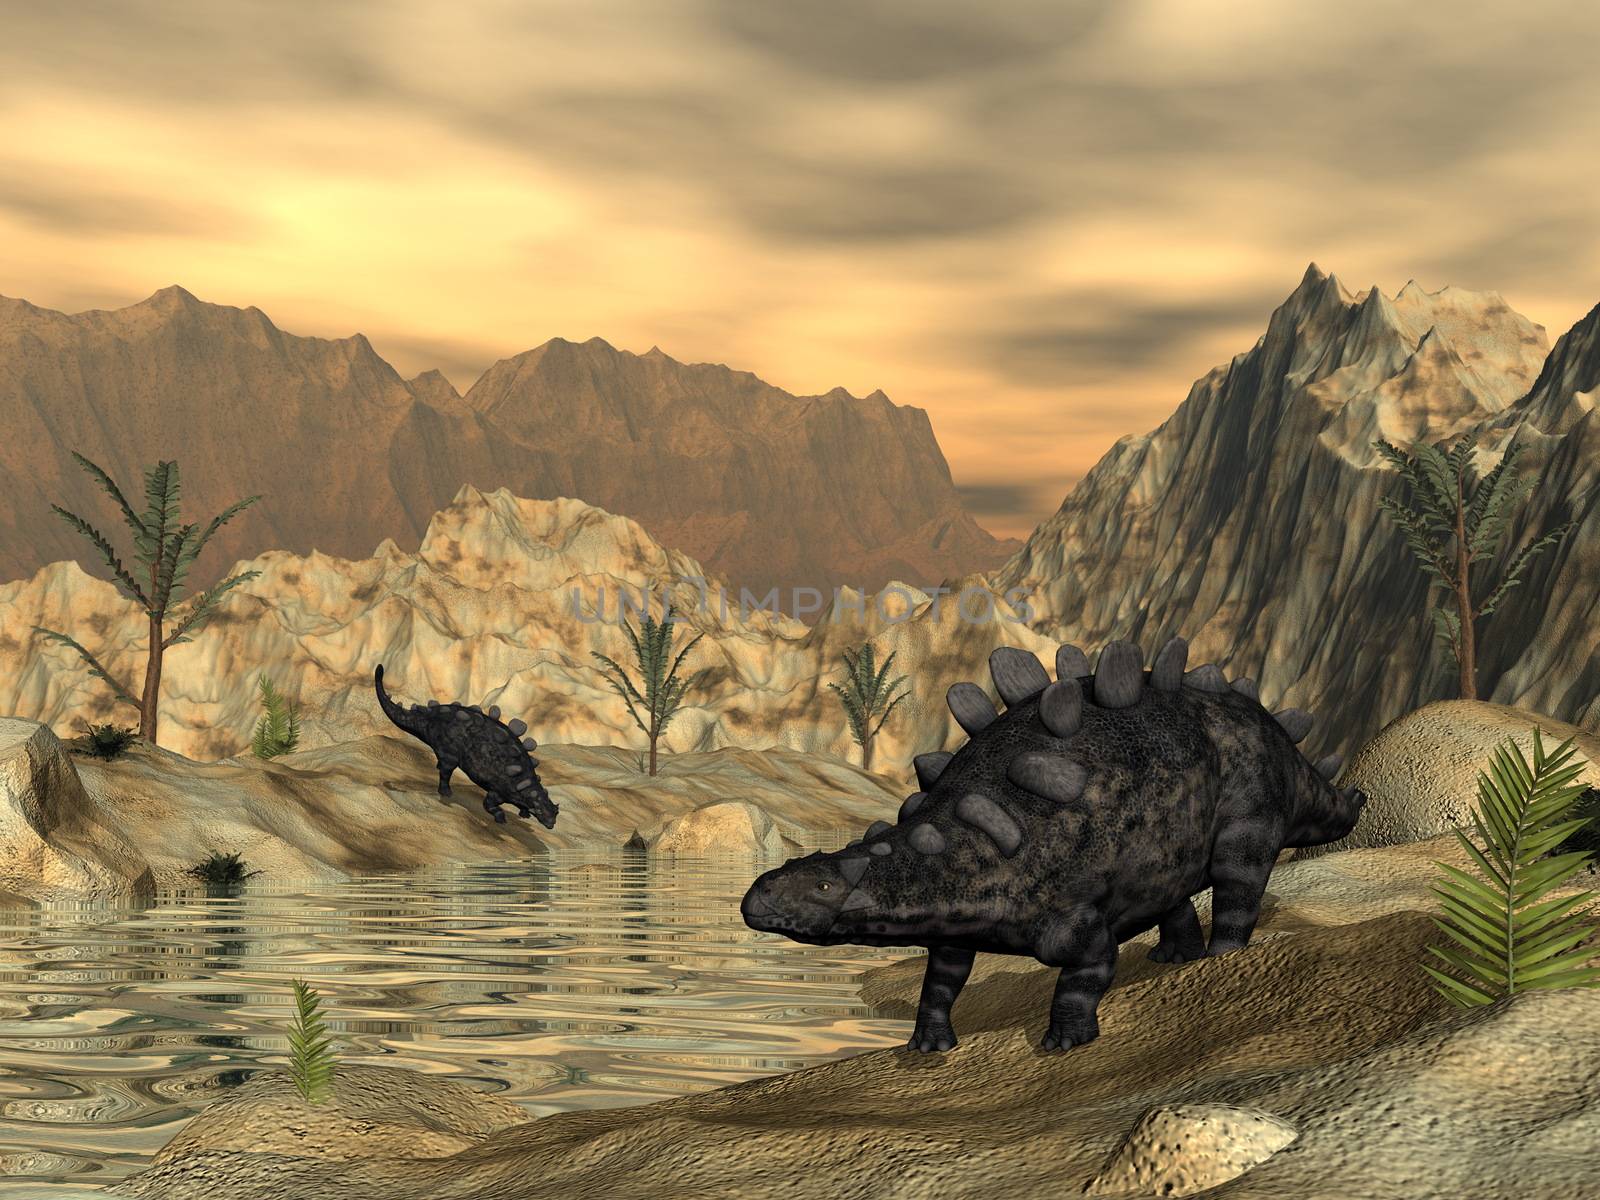 Chrichtonsaurus dinosaurs - 3D render by Elenaphotos21